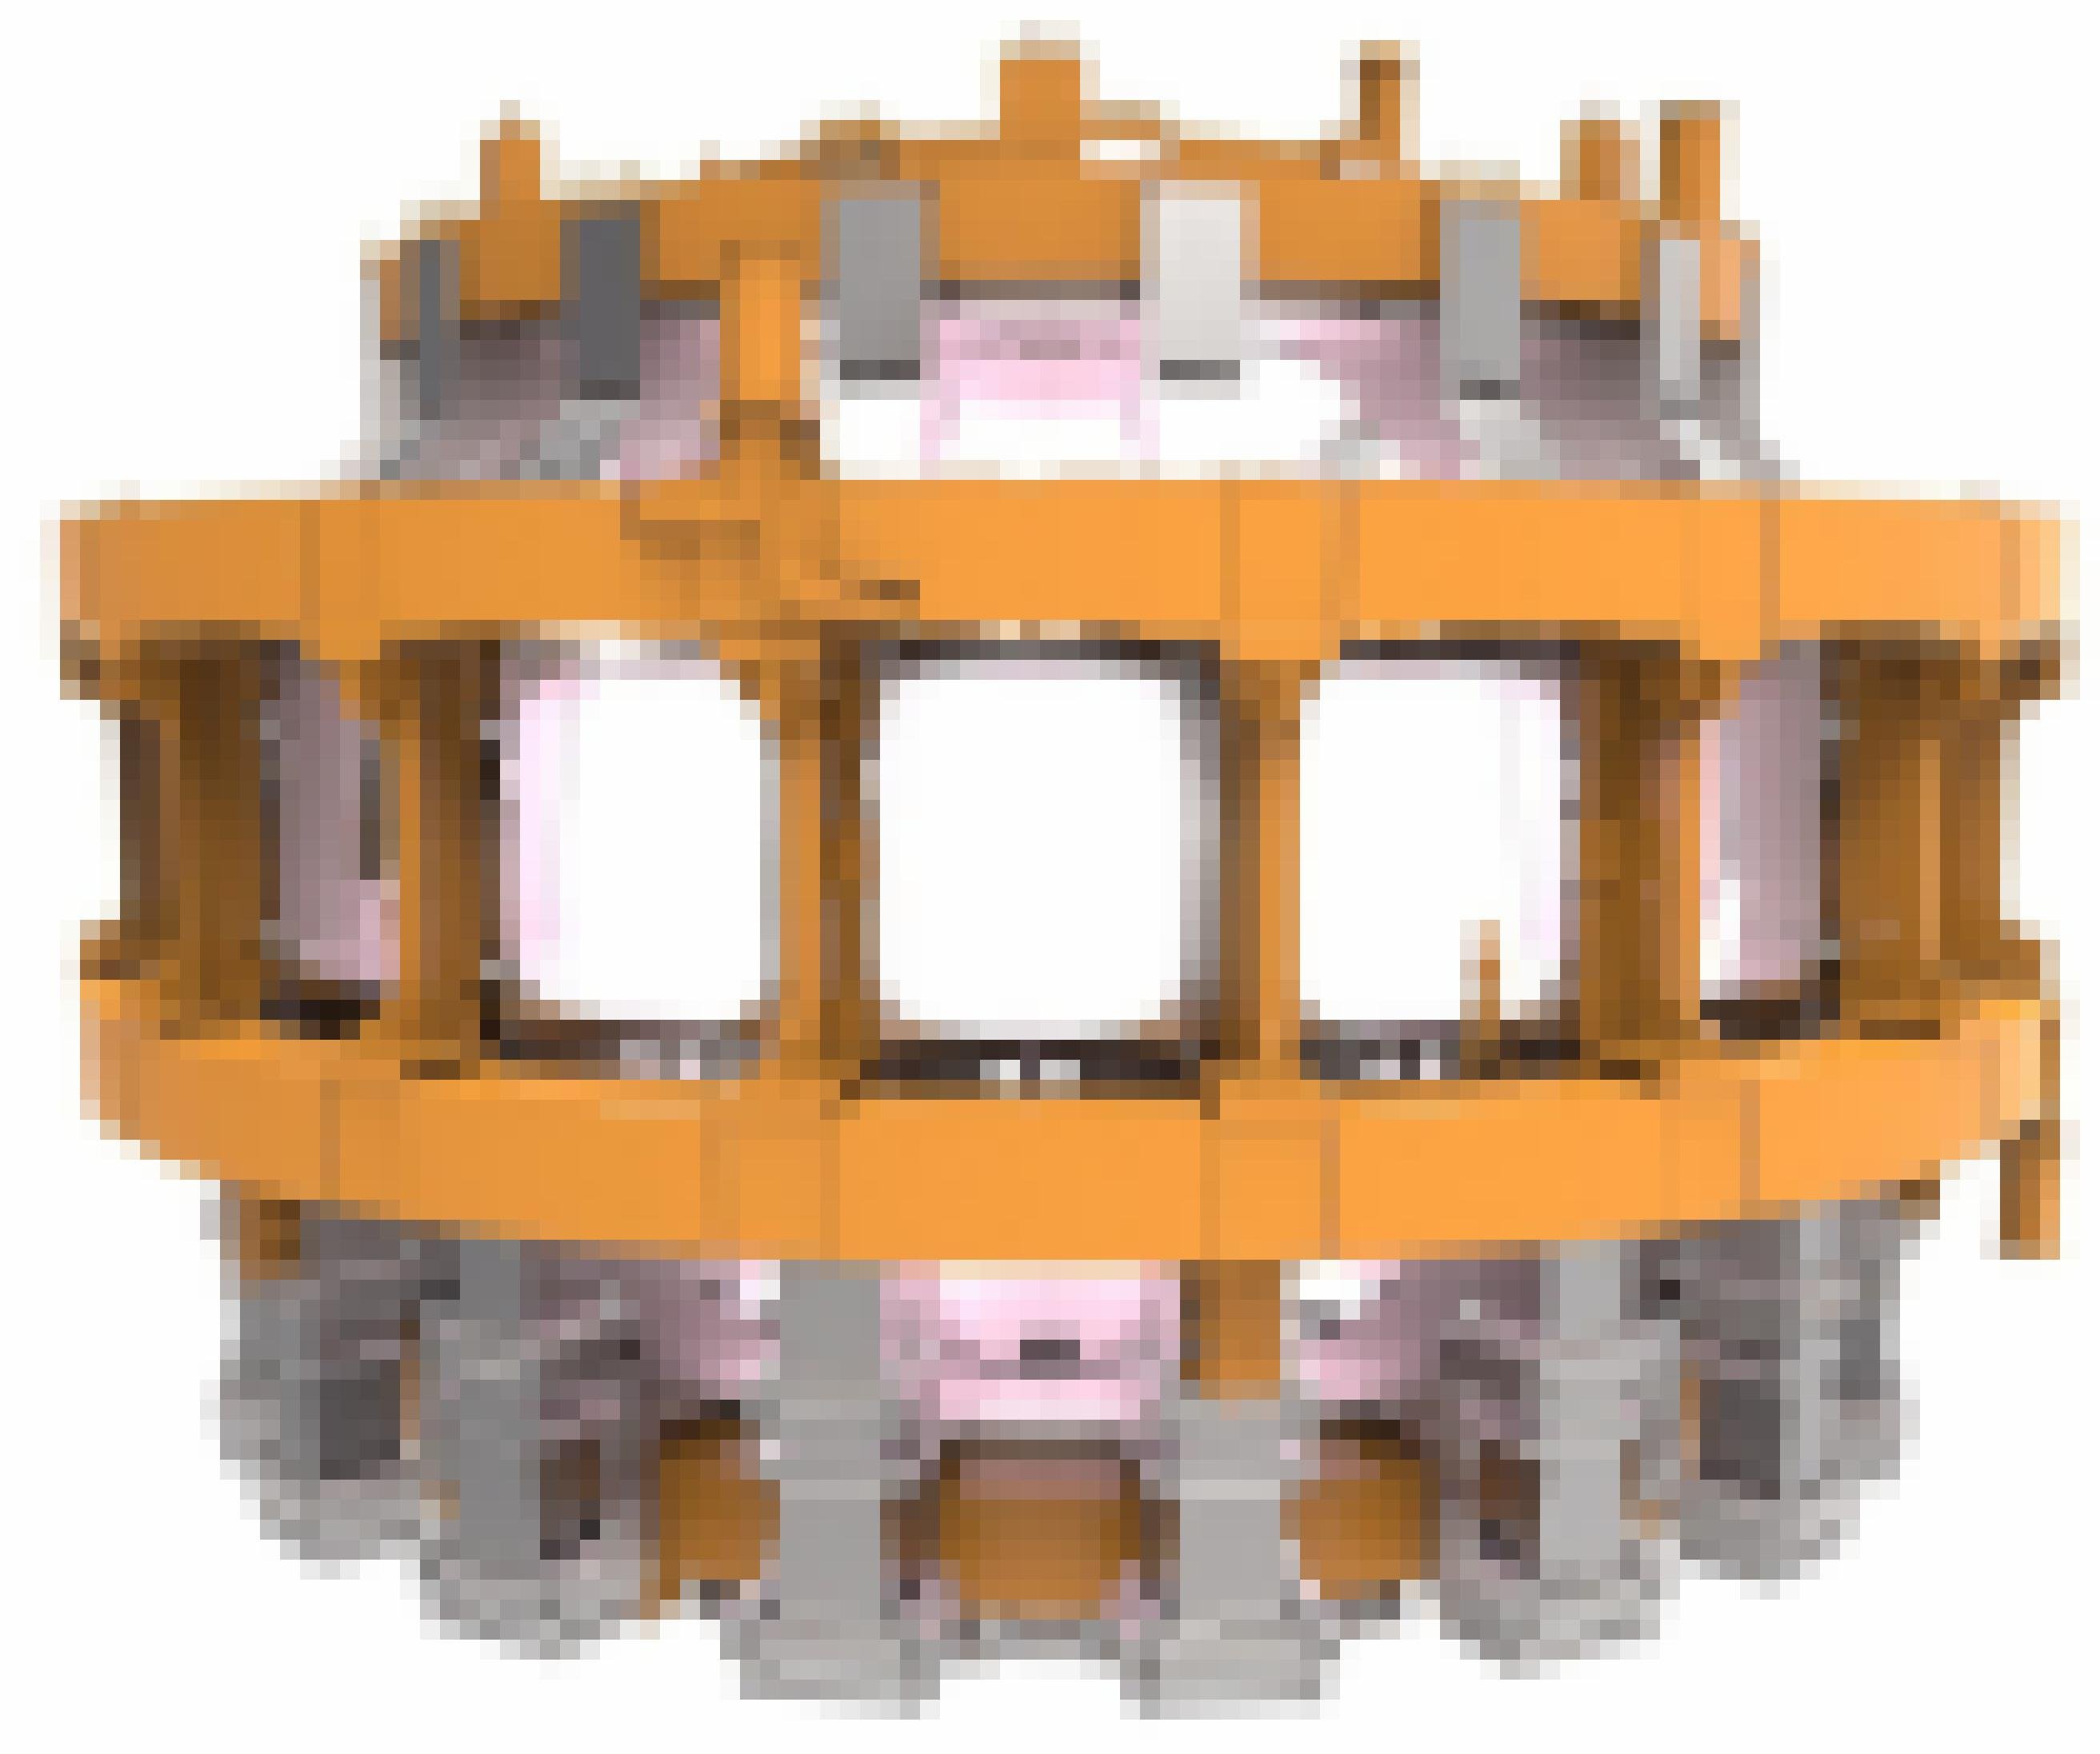 Ein 400 Tonnen schwerer Magnetring (orange) wird einmal das Plasmagefäß umschließen. Als Größenvergleich ist ein Mensch eingezeichnet.